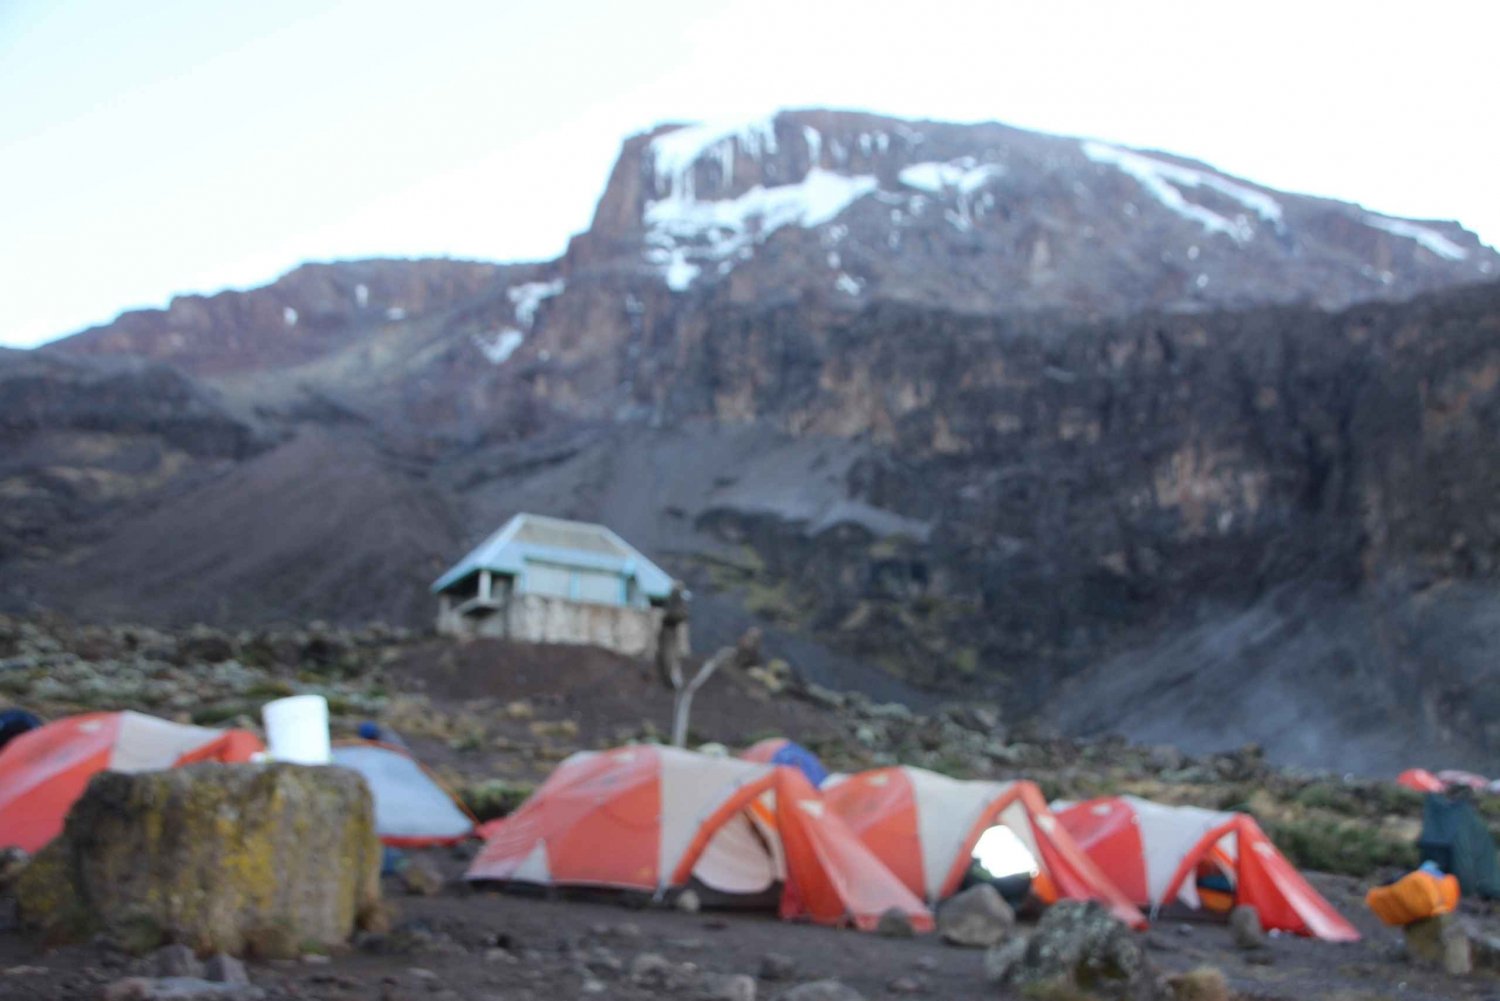 Excursão de 8 dias para escalar o Monte Kilimanjaro pela Rota Lemosho